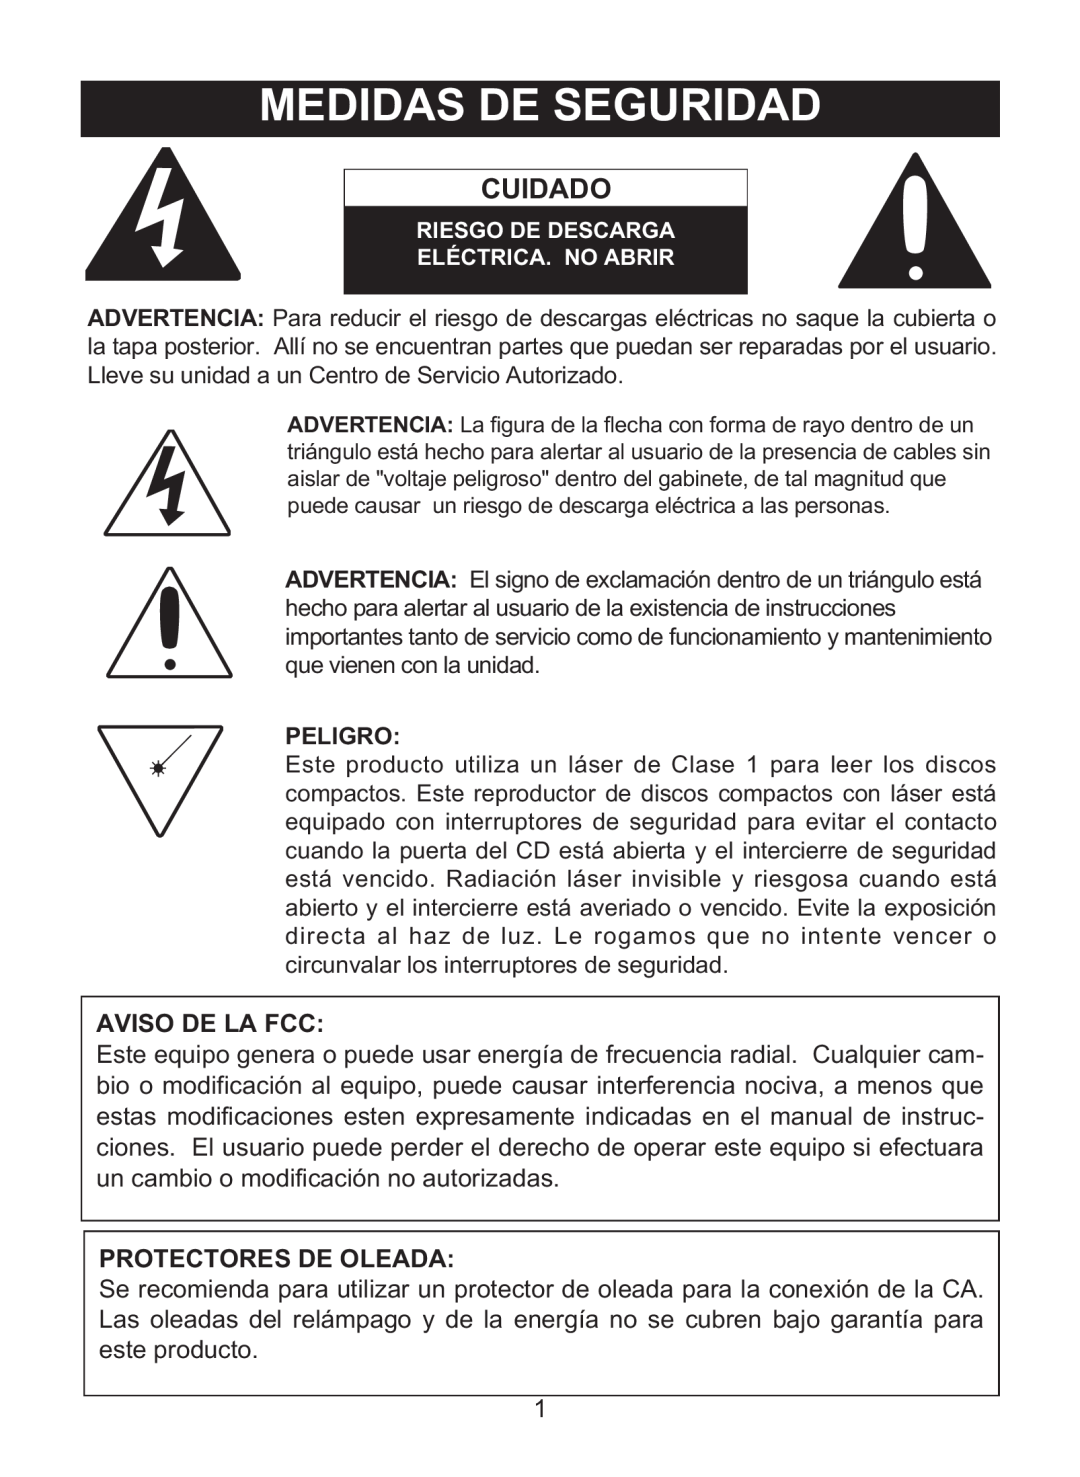 Memorex MD6460 manual Medidas De Seguridad, Cuidado, Aviso De La Fcc, Protectores De Oleada 